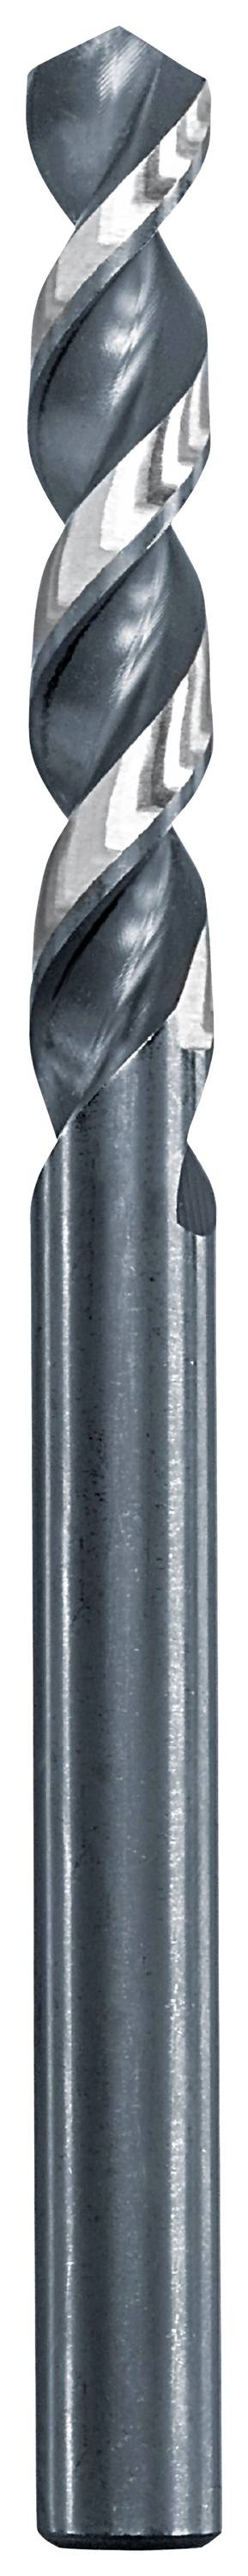 KWB 258665 Metall-Spiralbohrer 6.5 mm Gesamtlänge 101 mm 1 St.